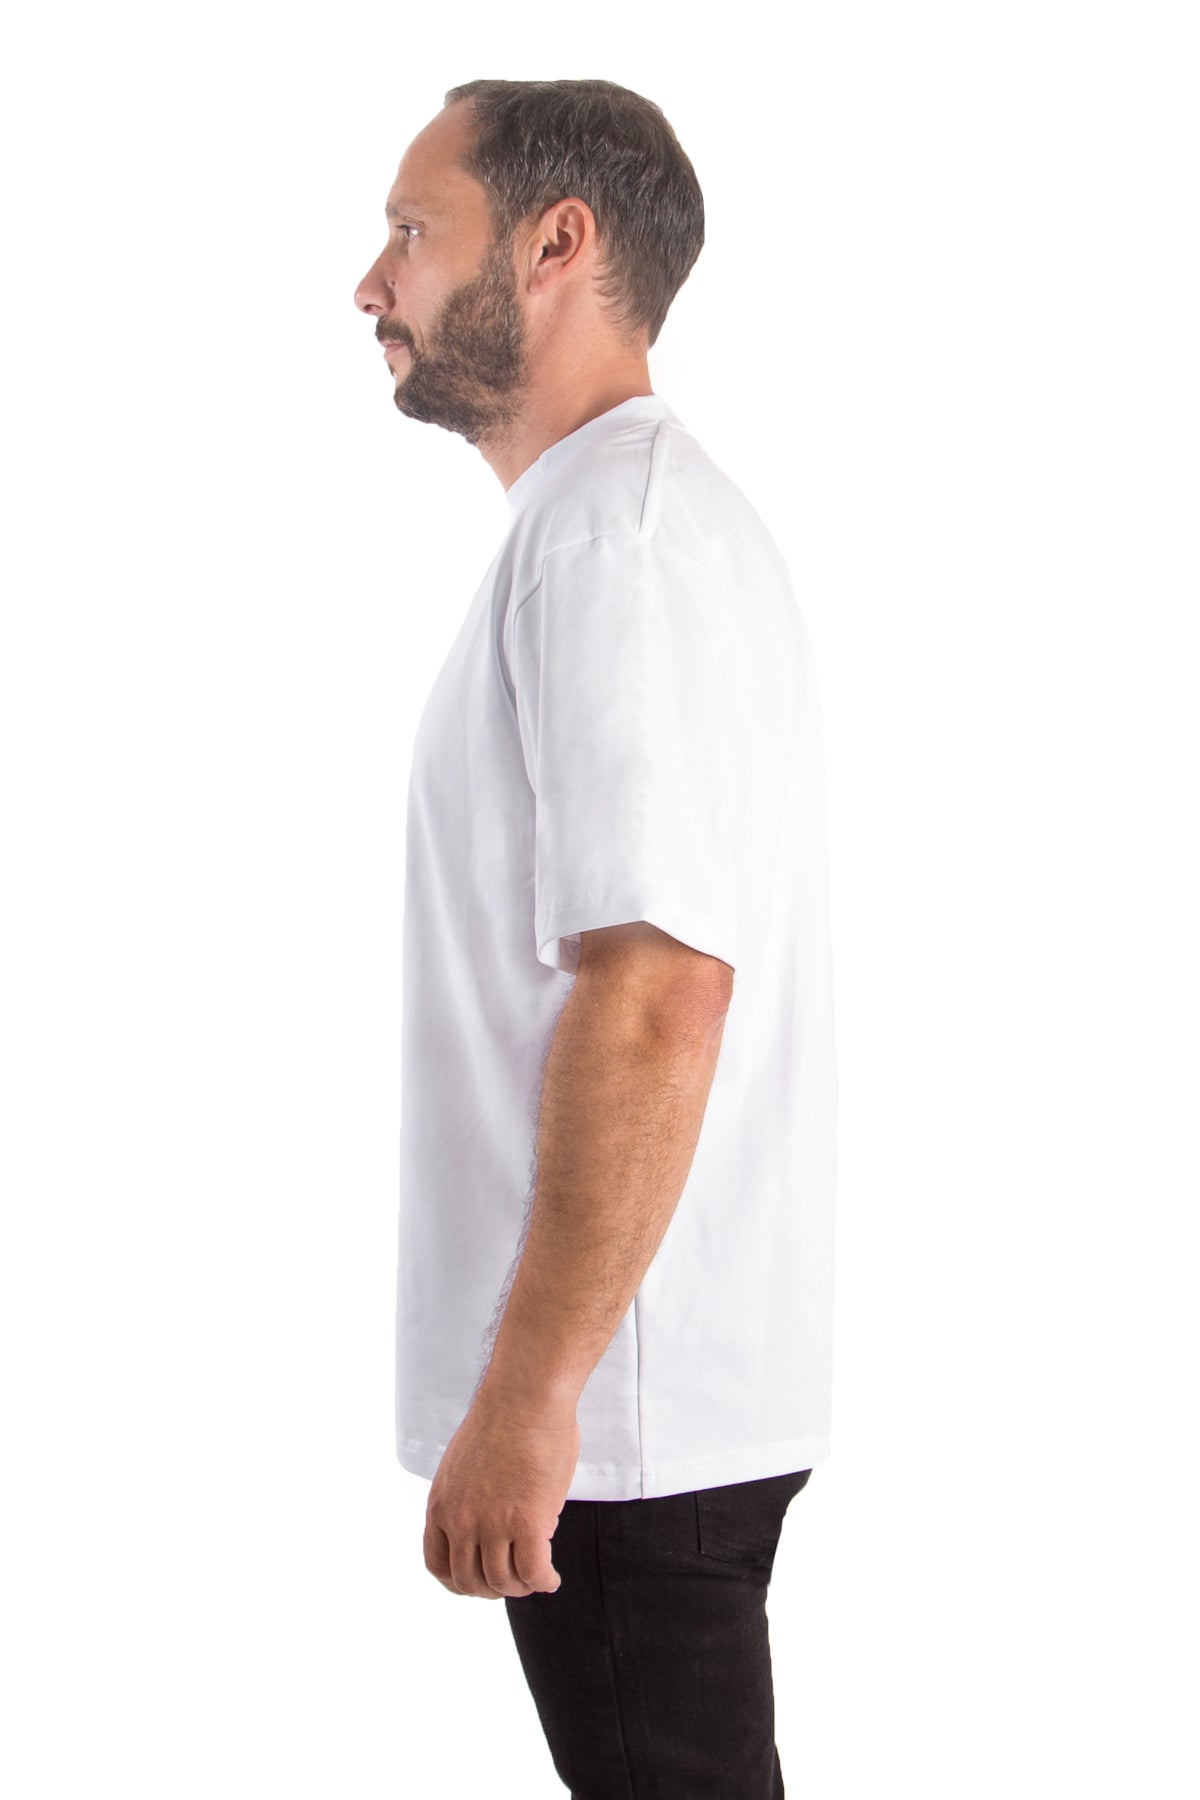 T-Shirt Oversized (10er-Pack) - anthrazit